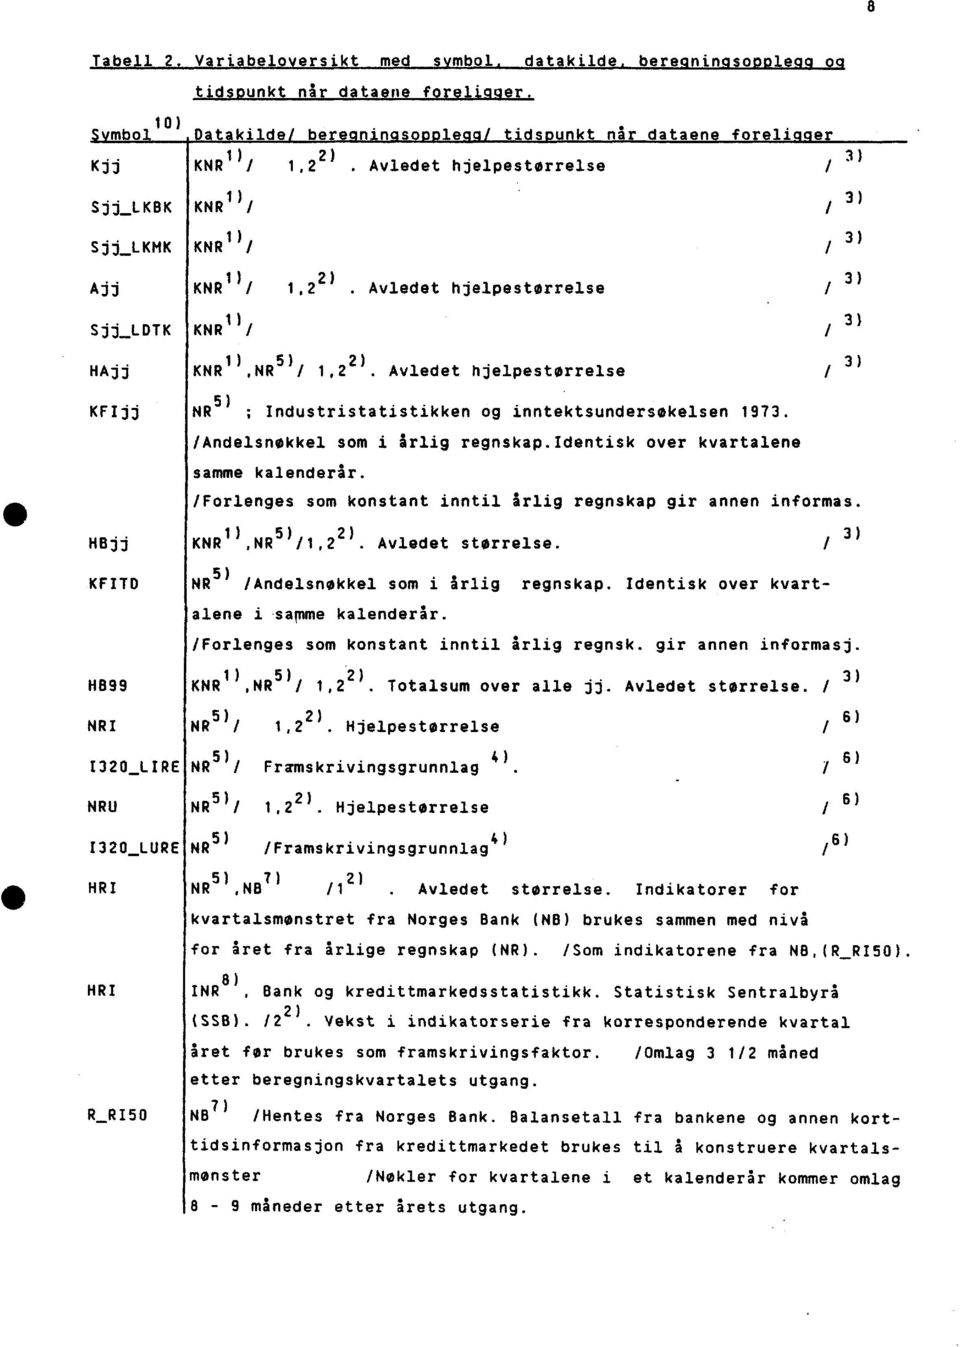 Avledet hjelpestørrelse KFIjj NR 5) ; Industristatistikken og inntektsundersøkelsen 1973. /Andelsnøkkel som i årlig regnskap.identisk over kvartalene samme kalenderår.